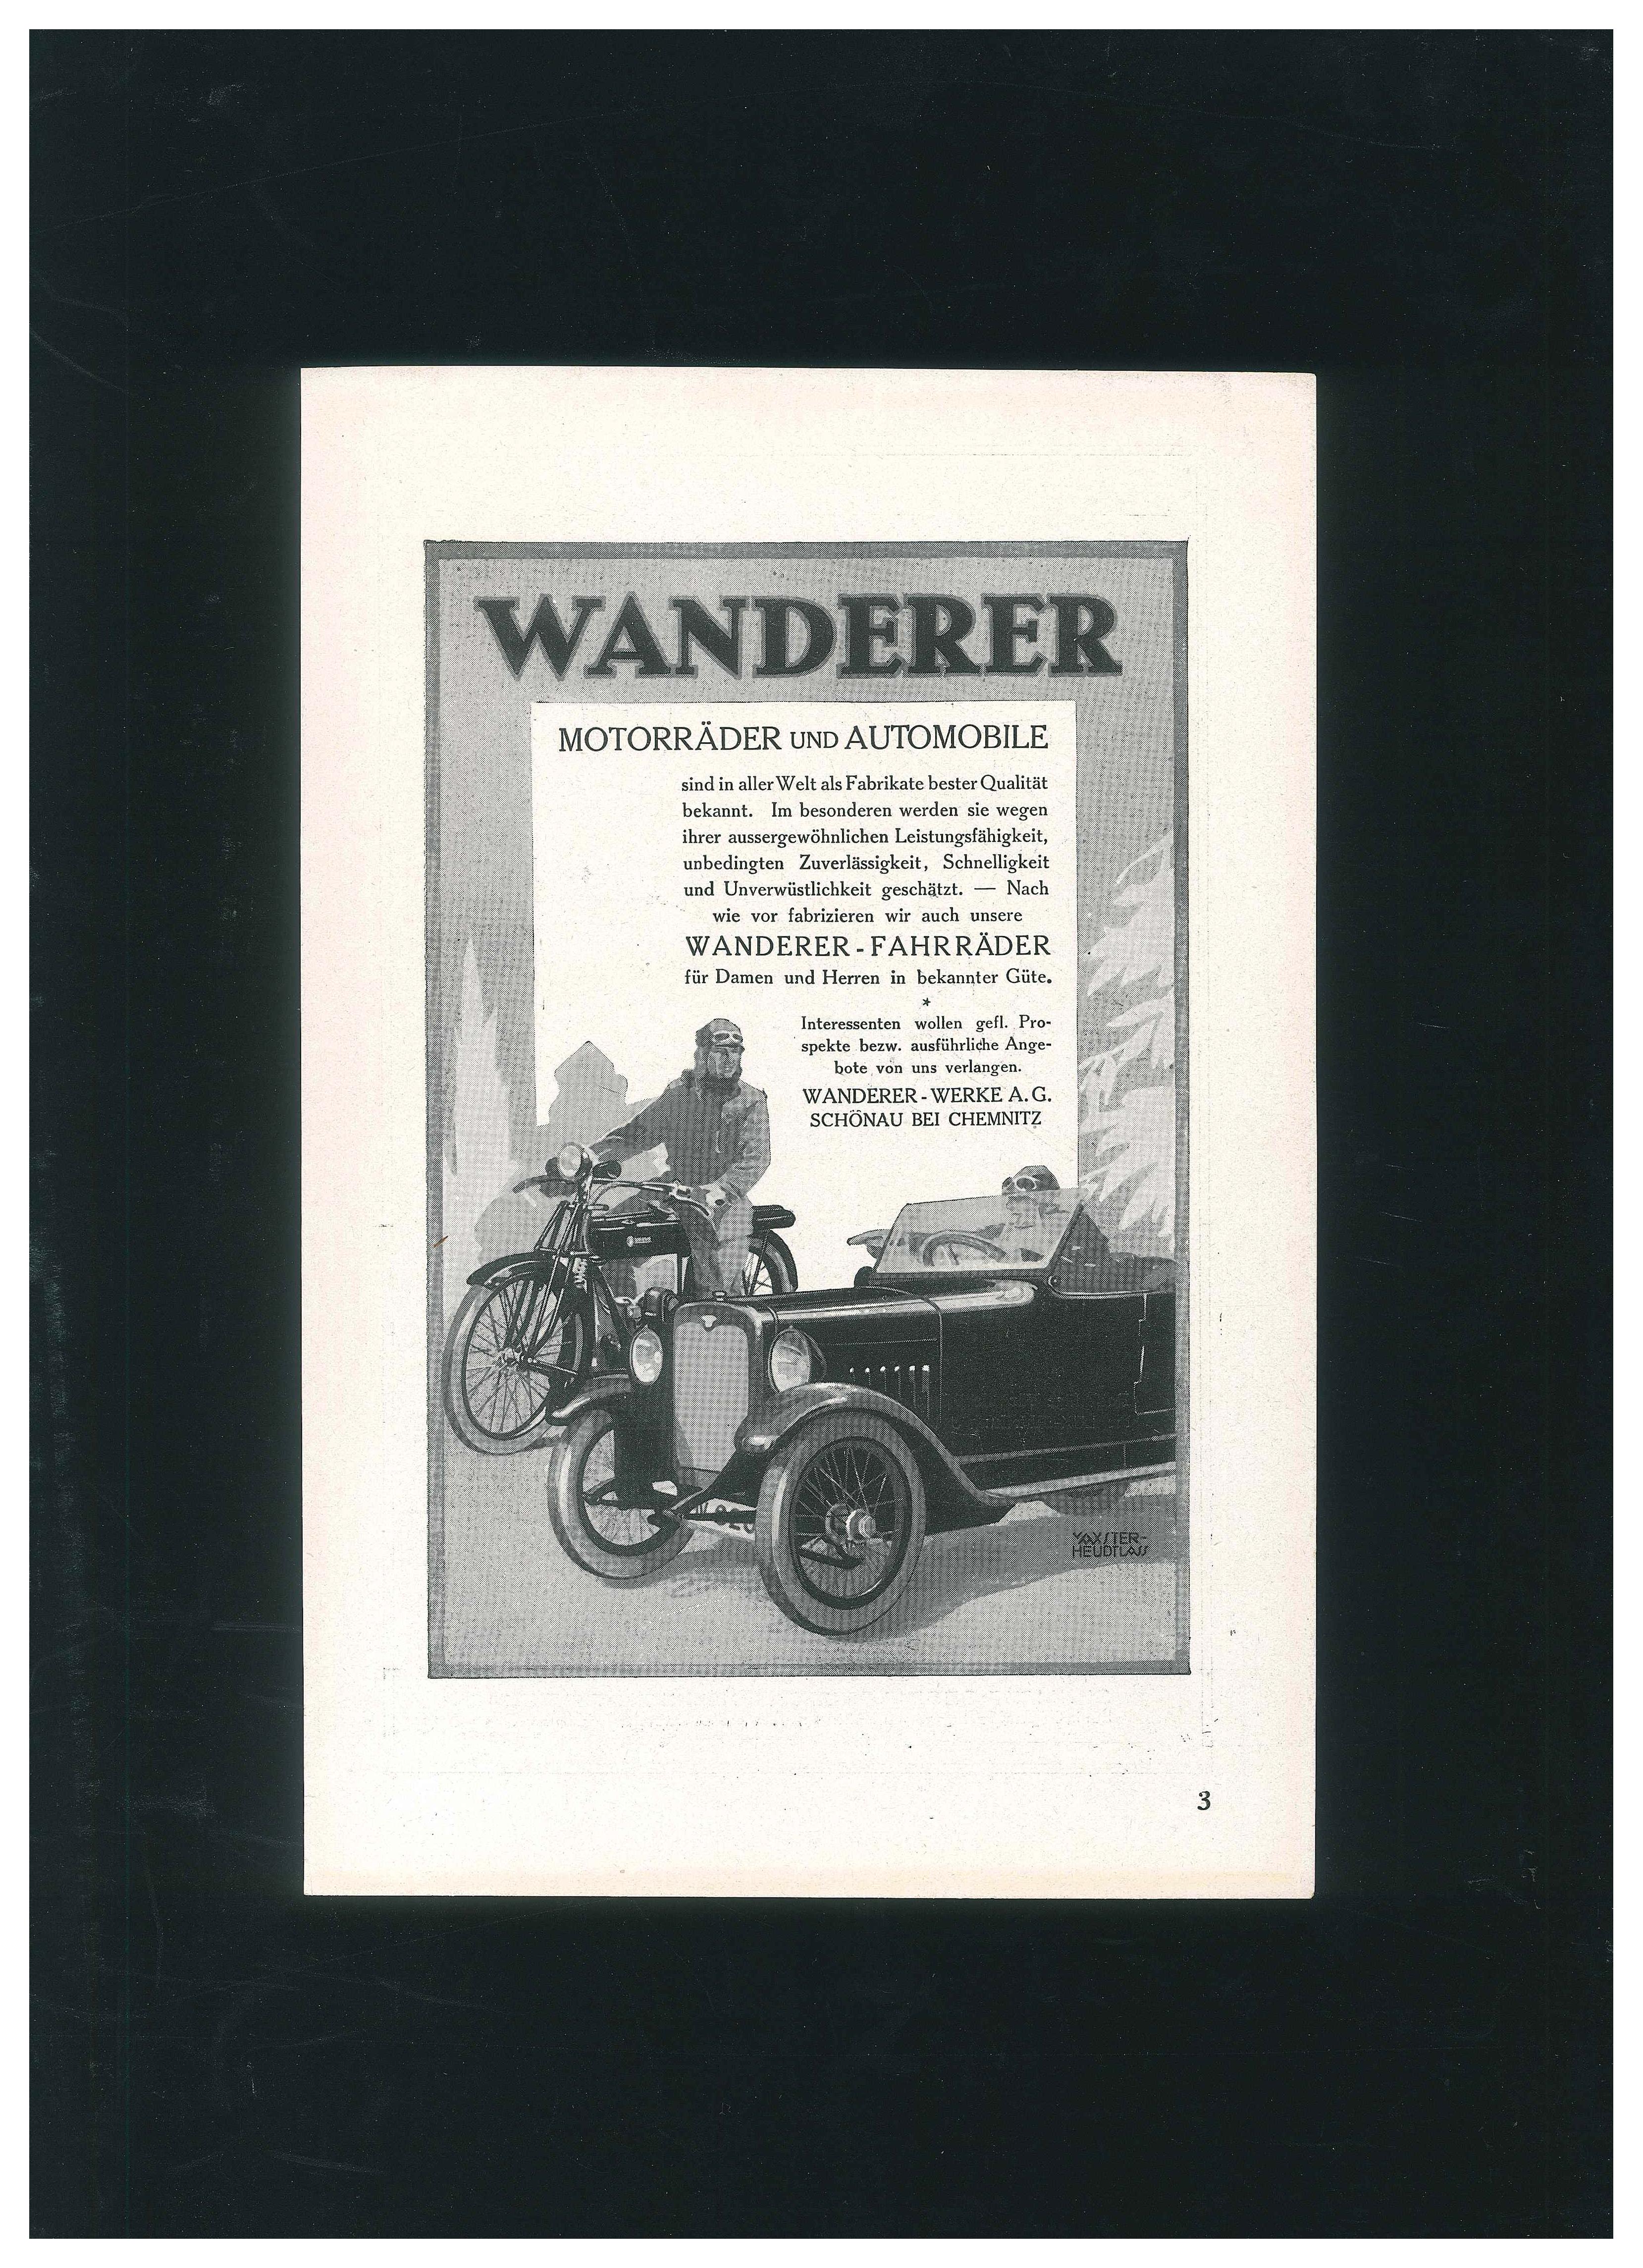 1930s wanderer